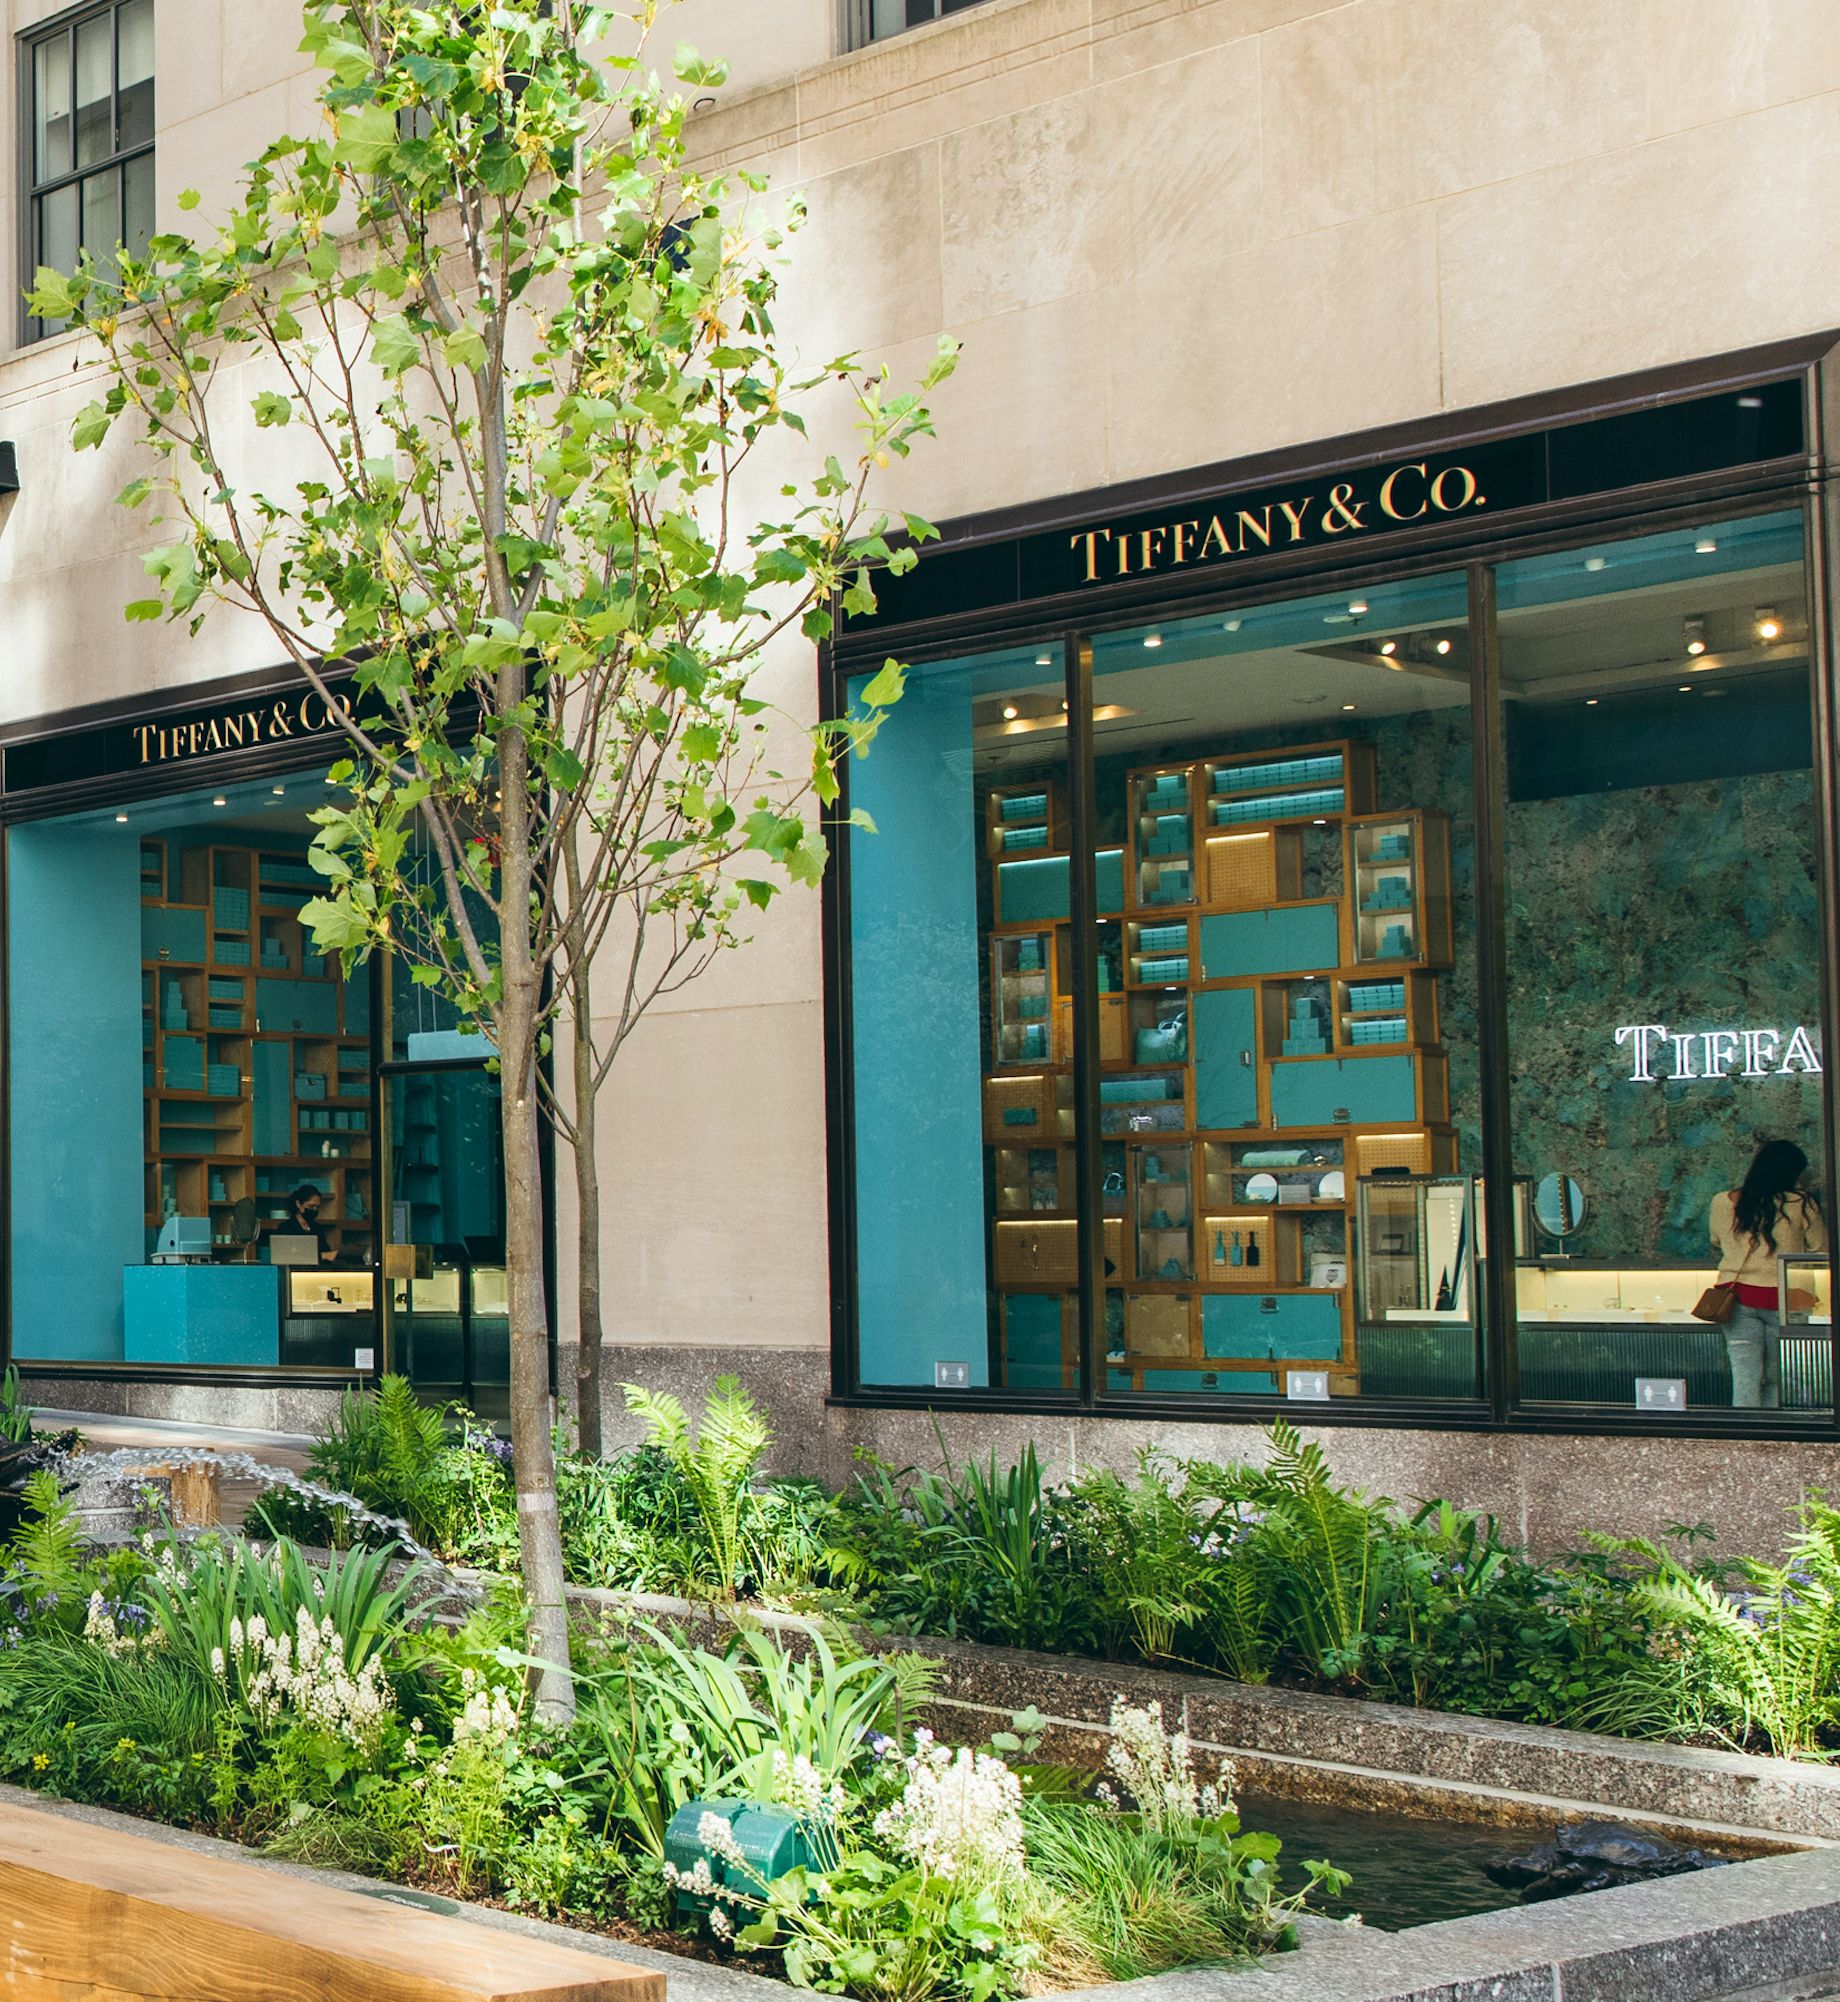 Tiffany Legacy Gemstones | Tiffany & Co.